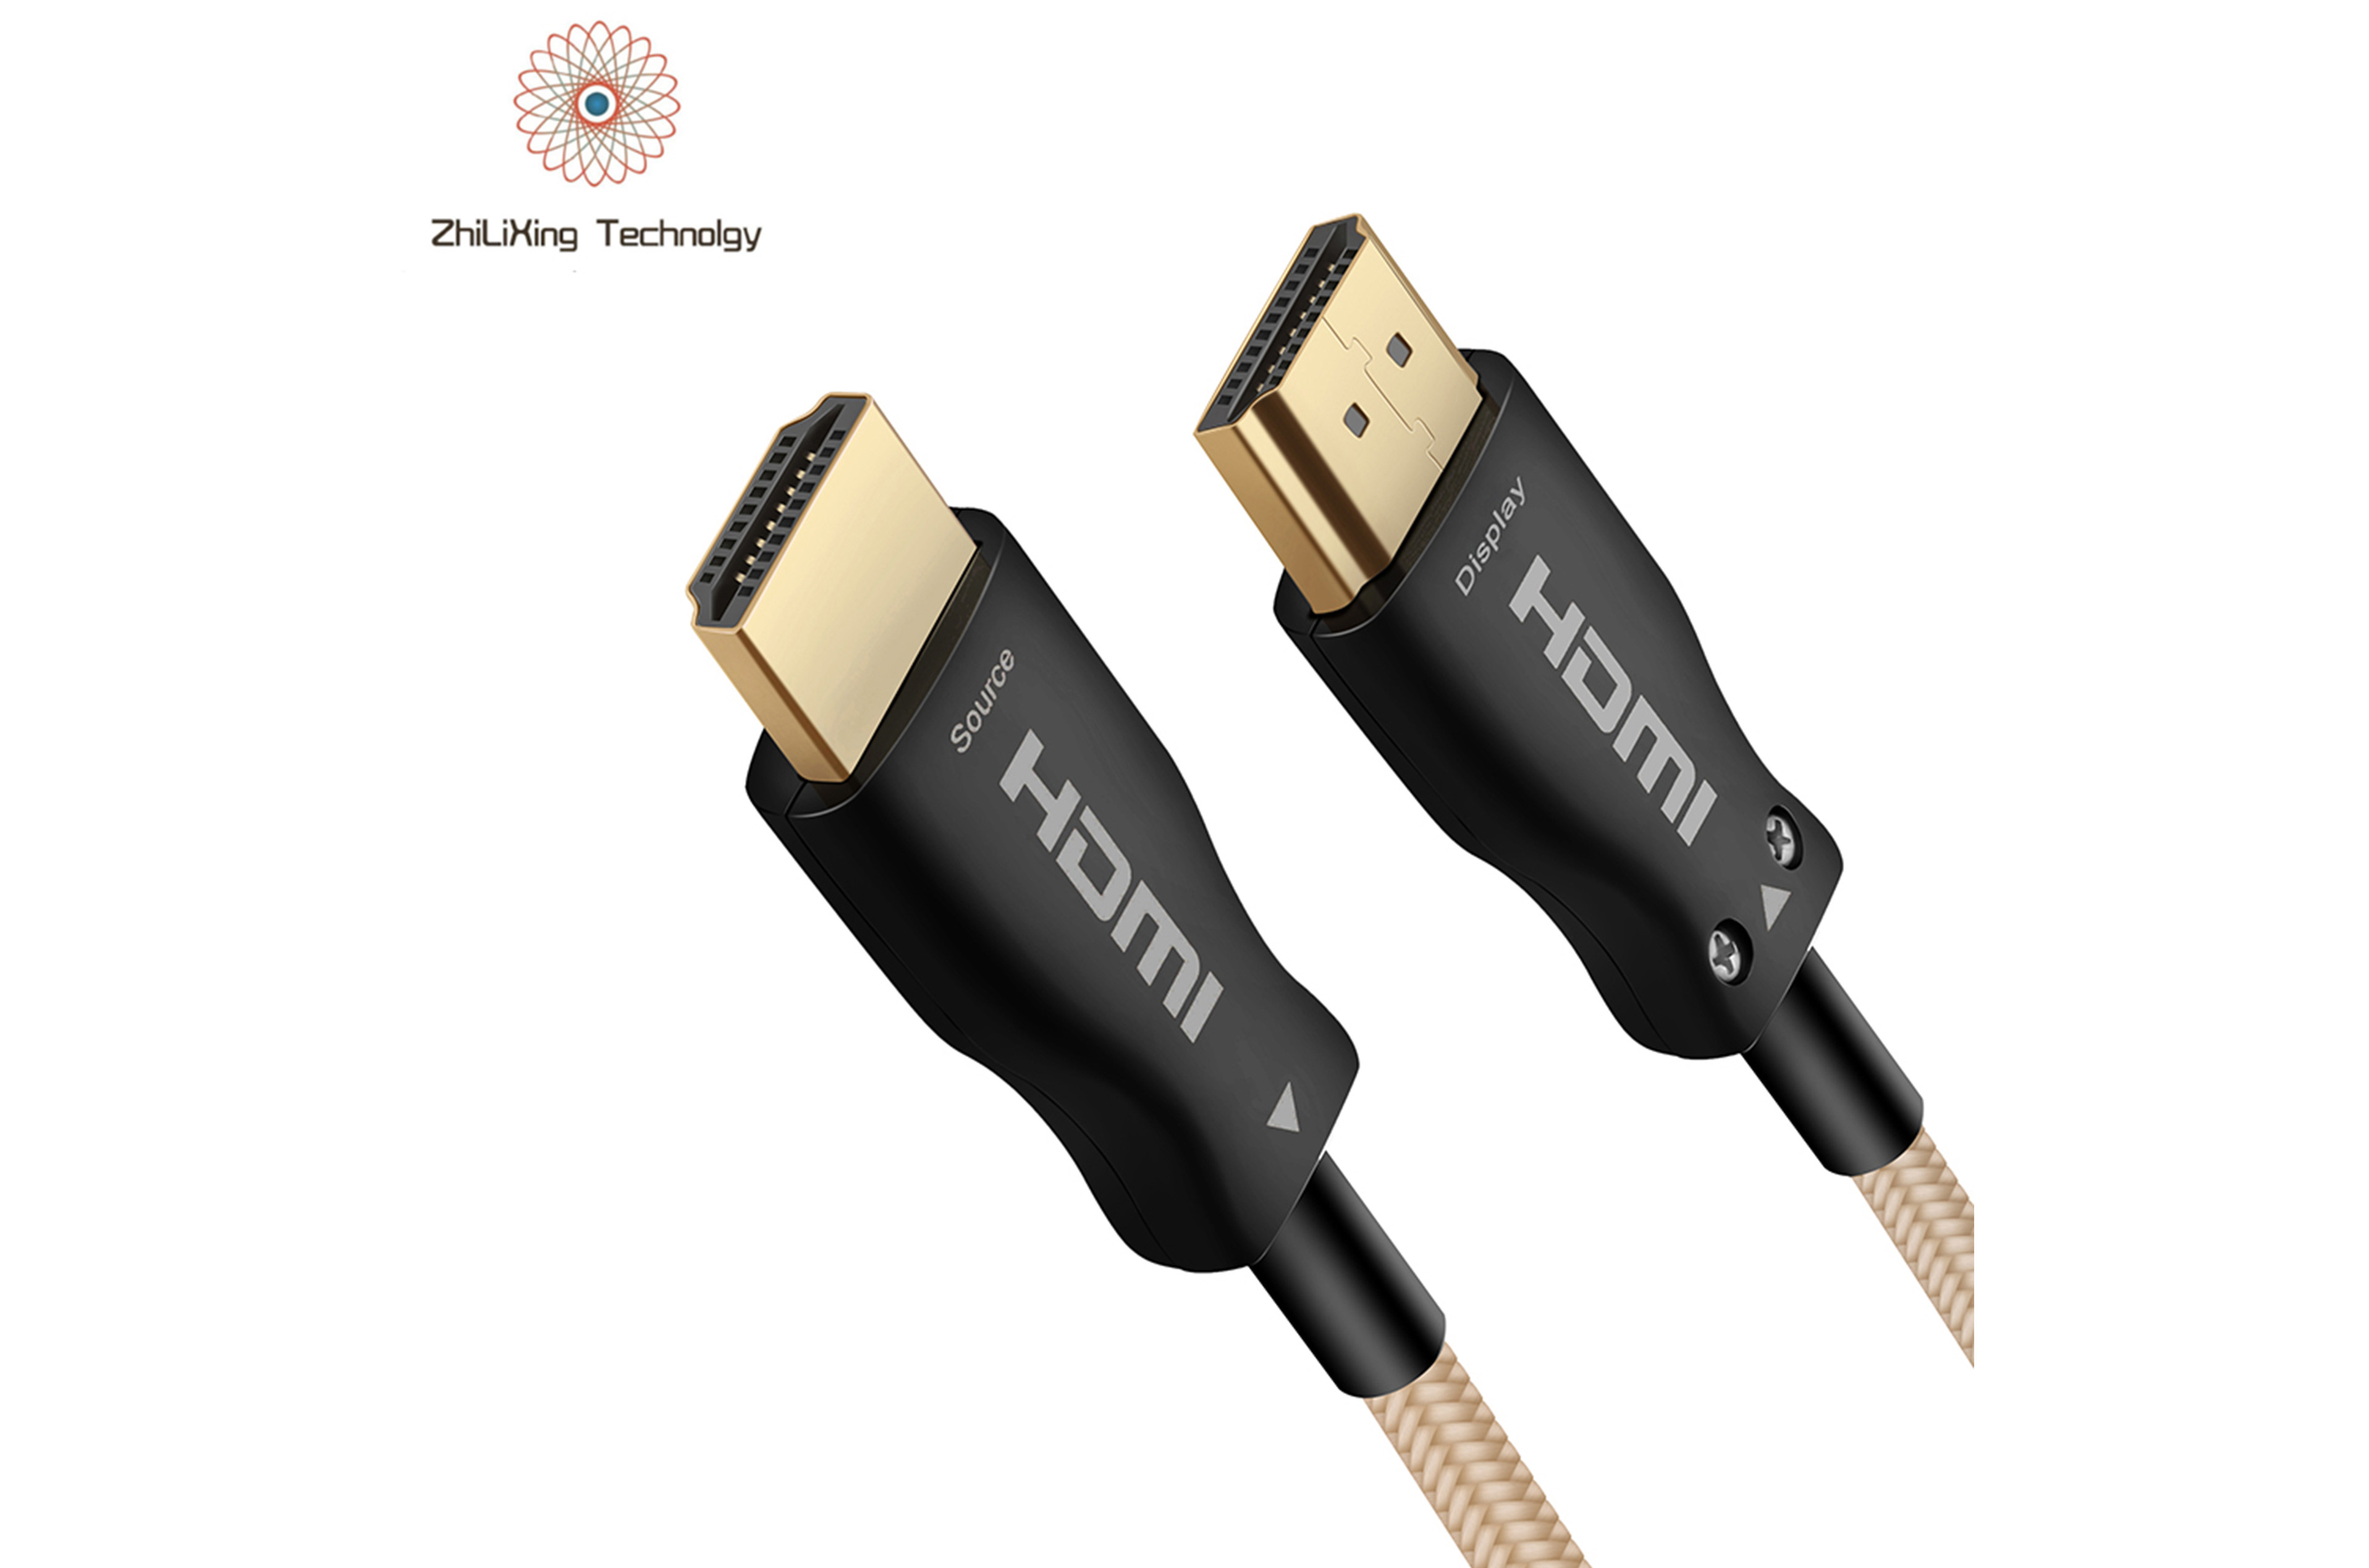 HDMI fiber optic cable-19013